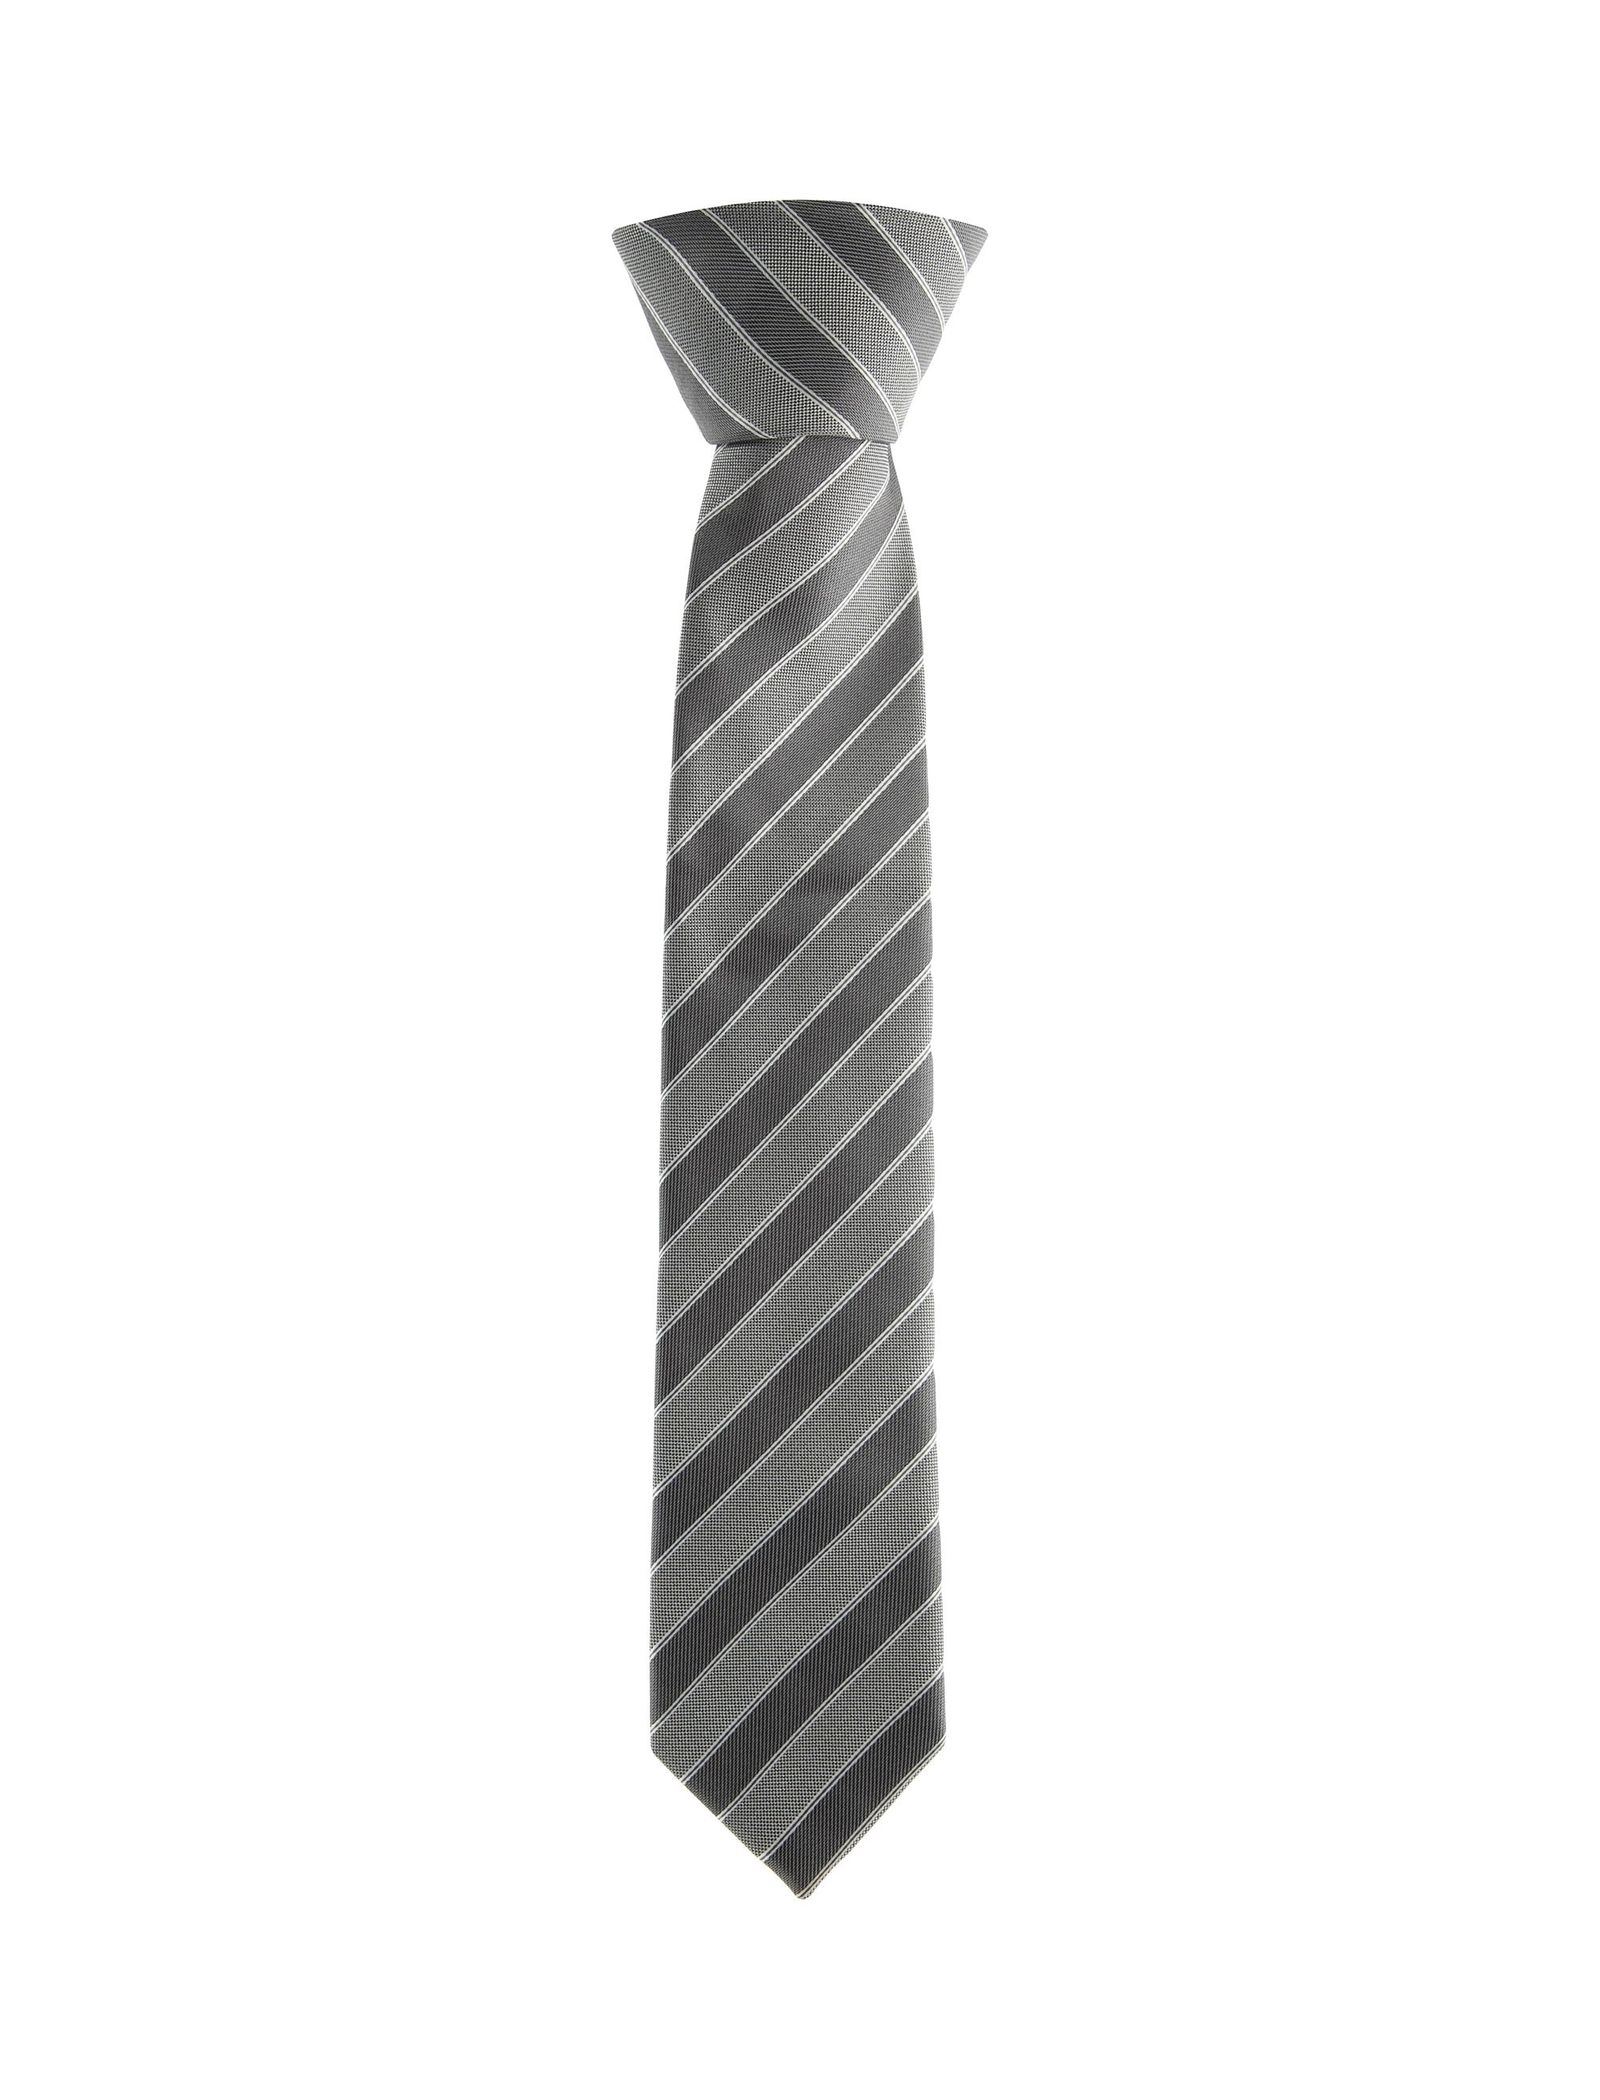 کراوات طرح دار مردانه - یوپیم - طوسي - 1